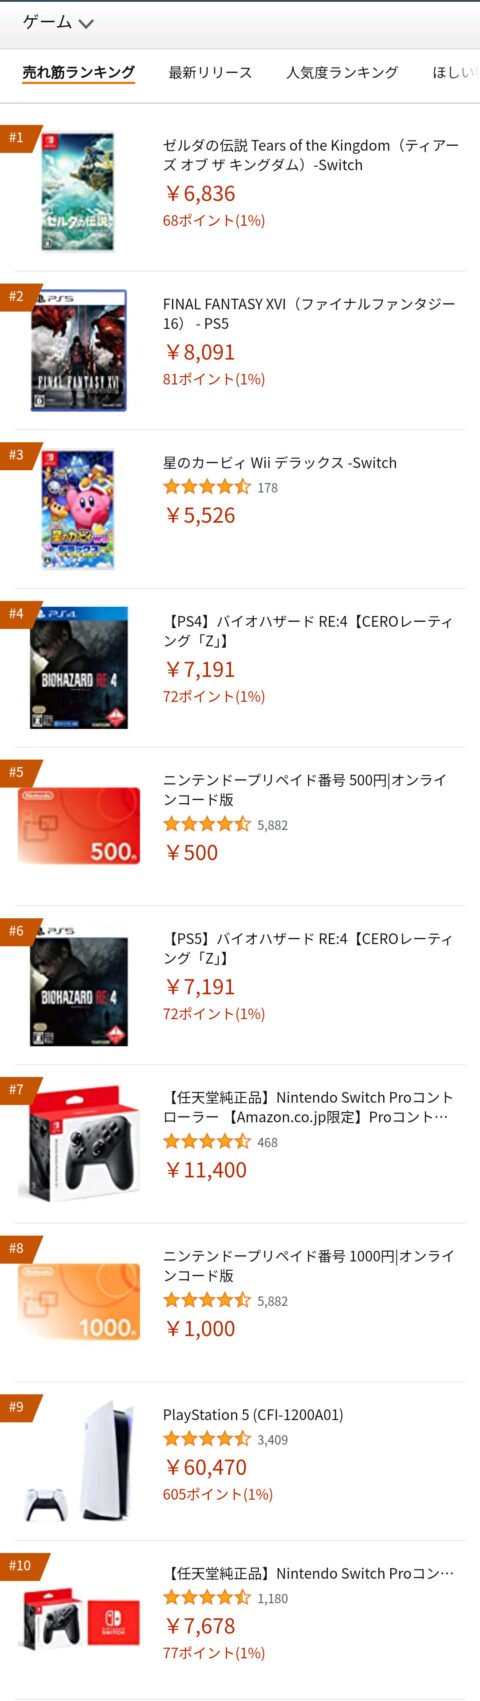 J4pJMHP-480x1701 【悲報】PS5本体Amazon売上ランキングで9位にまで落ちはじめる…